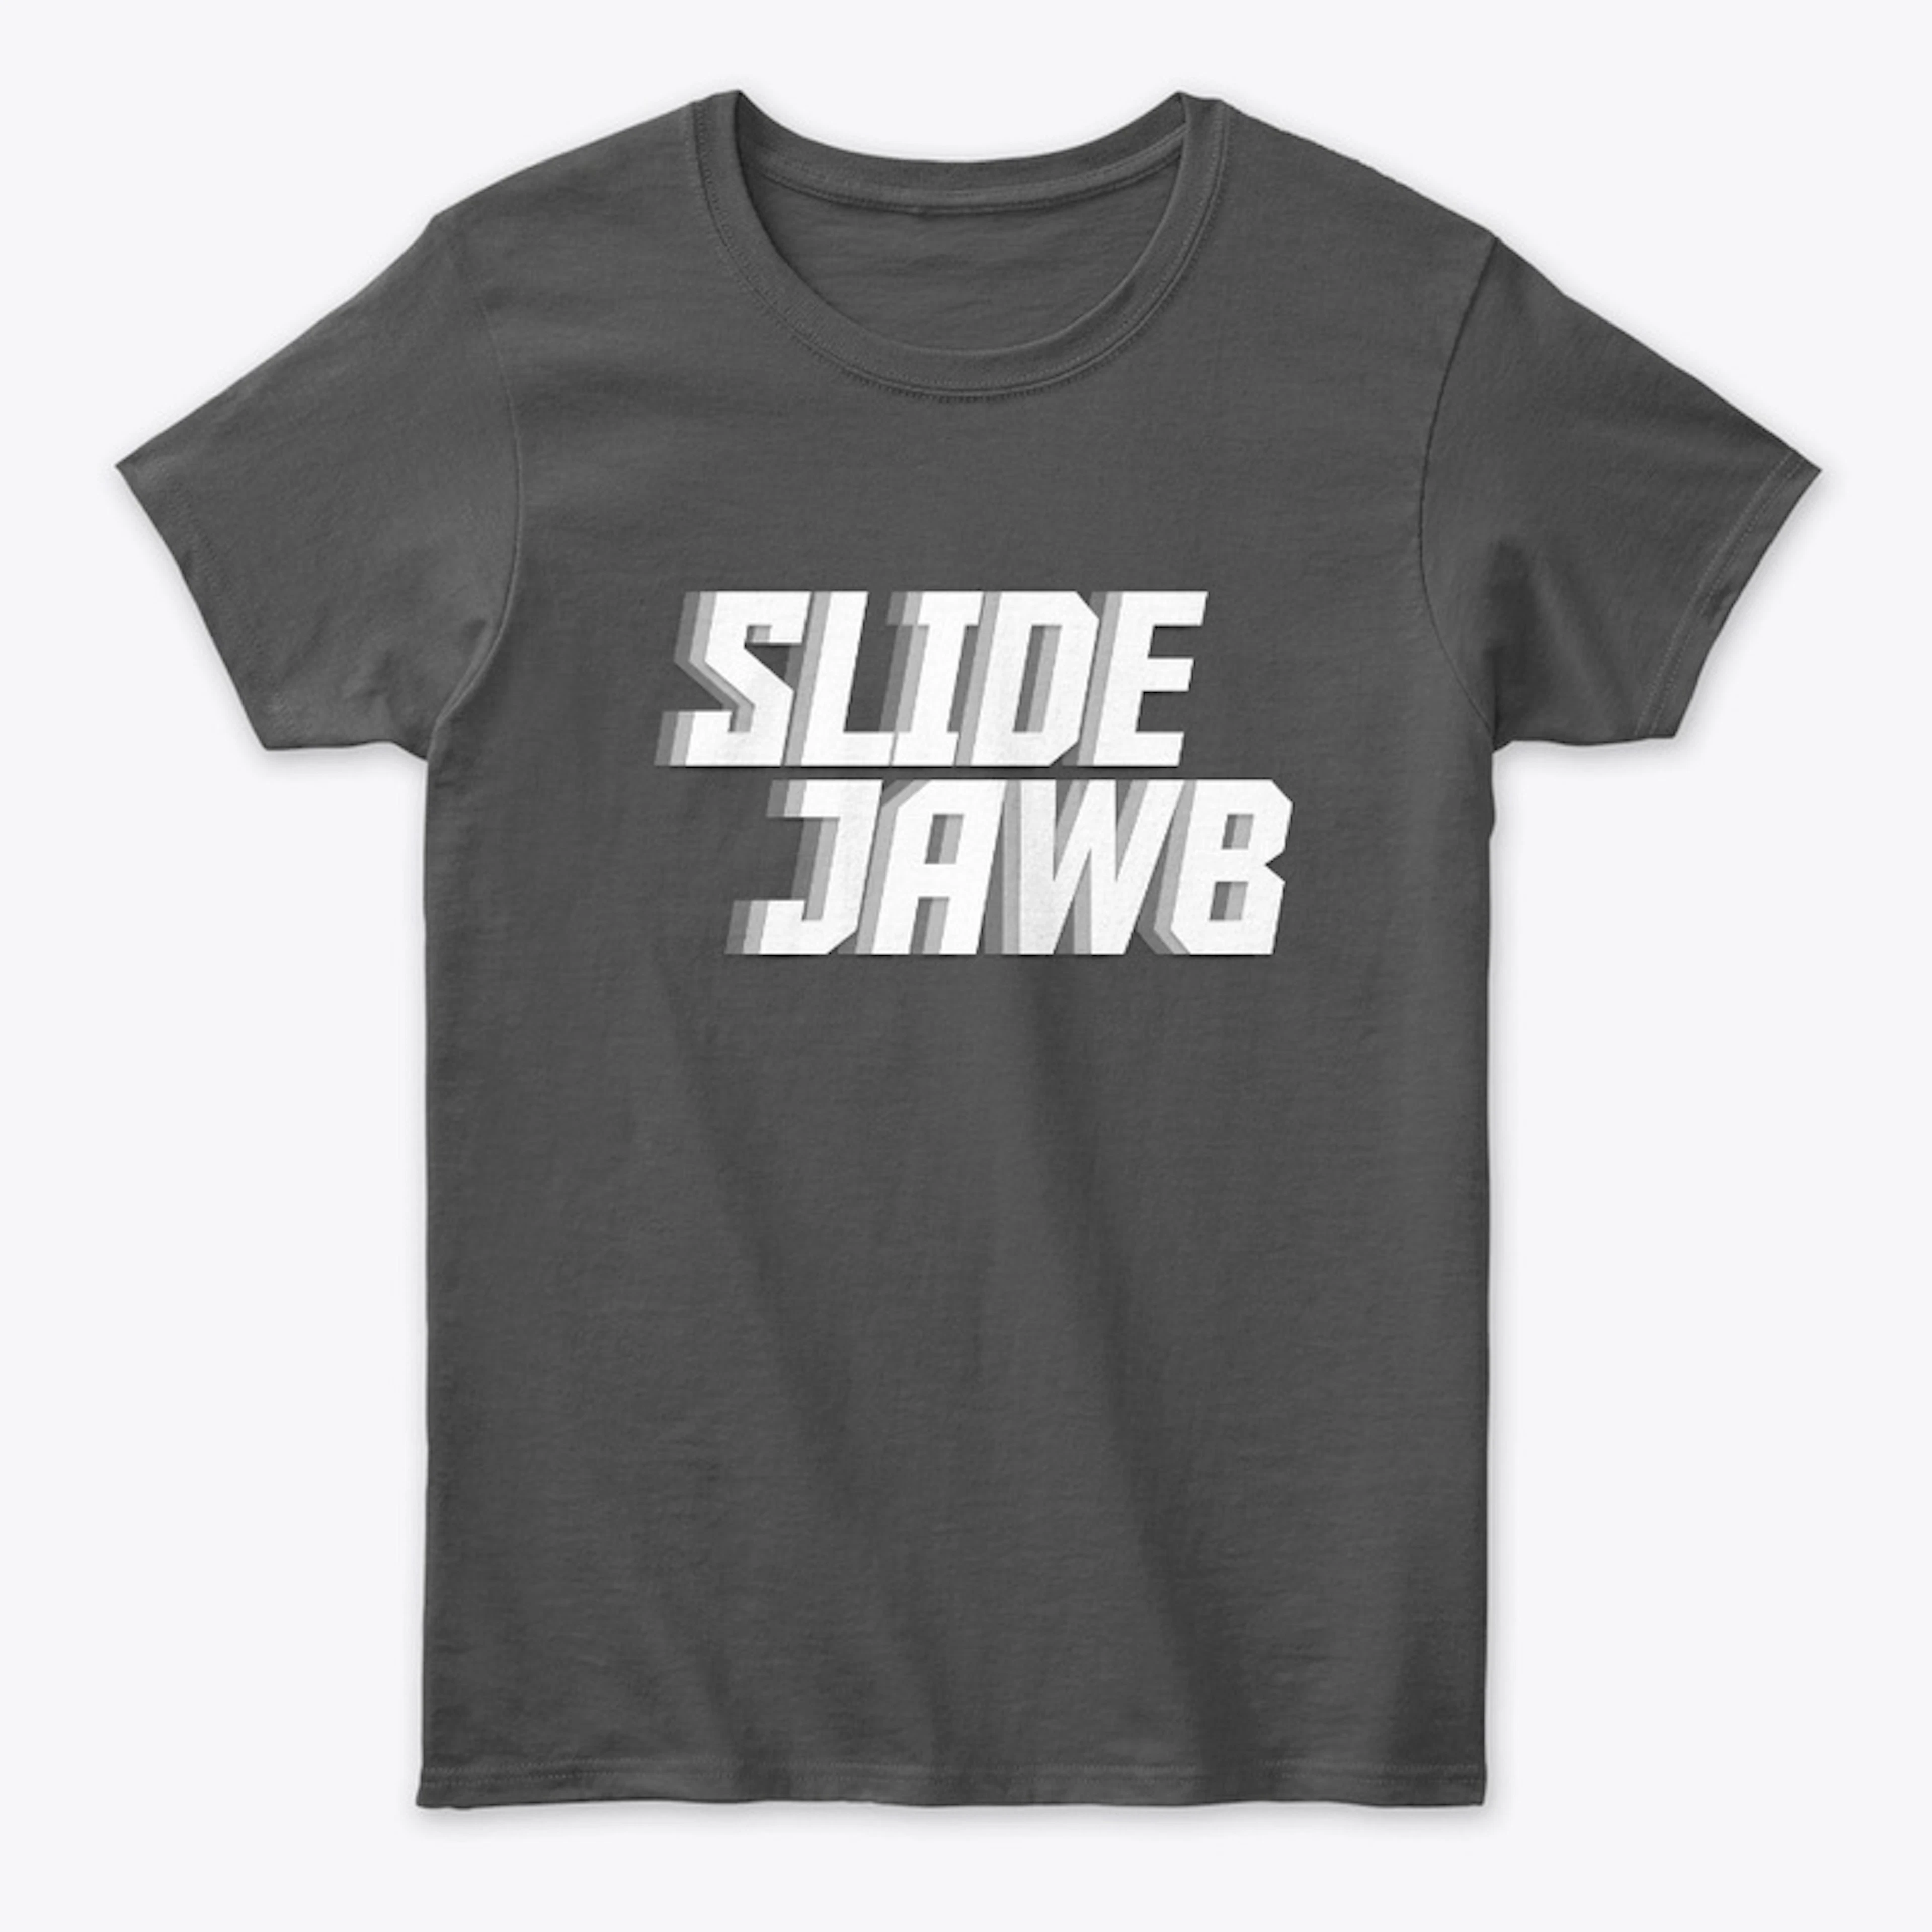 Slide Jawb!